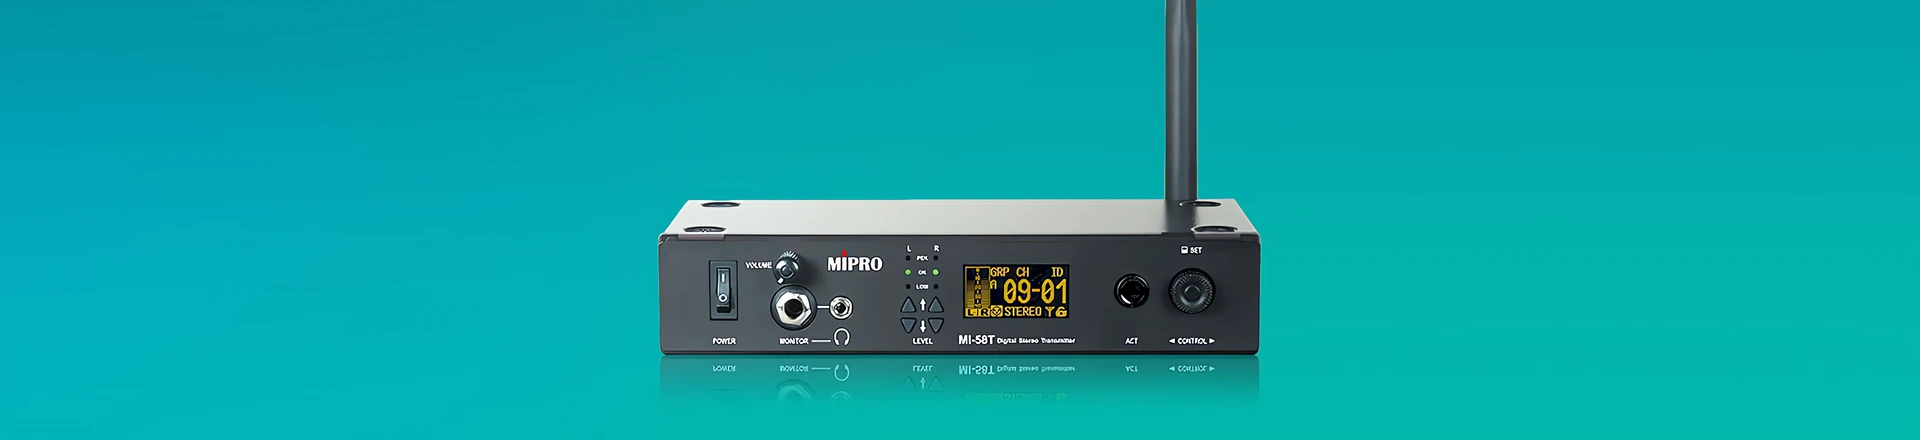 Mipro MI-58 - Stereofoniczny, cyfrowy system odsłuchu osobistego